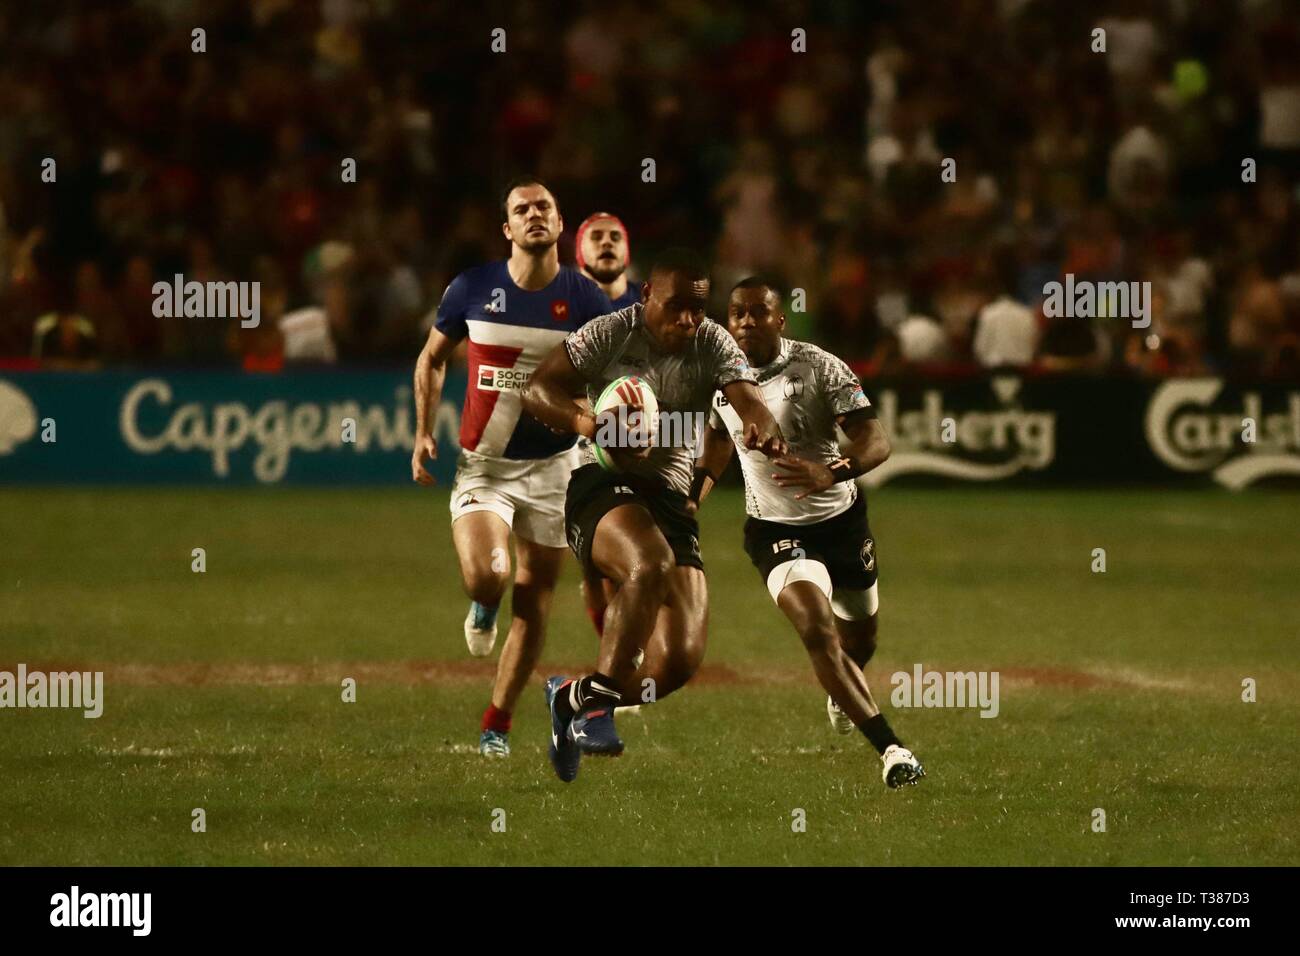 Hongkong, China. 7 Apr, 2019. Fiji Rugby Team gewann die Meisterschaft in der Cathay Pacific/HSBC Hongkong Sevens 2019 World Series FINAL, Scoring 21-7 Vollzeit gegen Frankreich. April 7, 2019 Hong Kong. ZUMA/Liau Chung-ren Credit: Liau Chung-ren/ZUMA Draht/Alamy leben Nachrichten Stockfoto